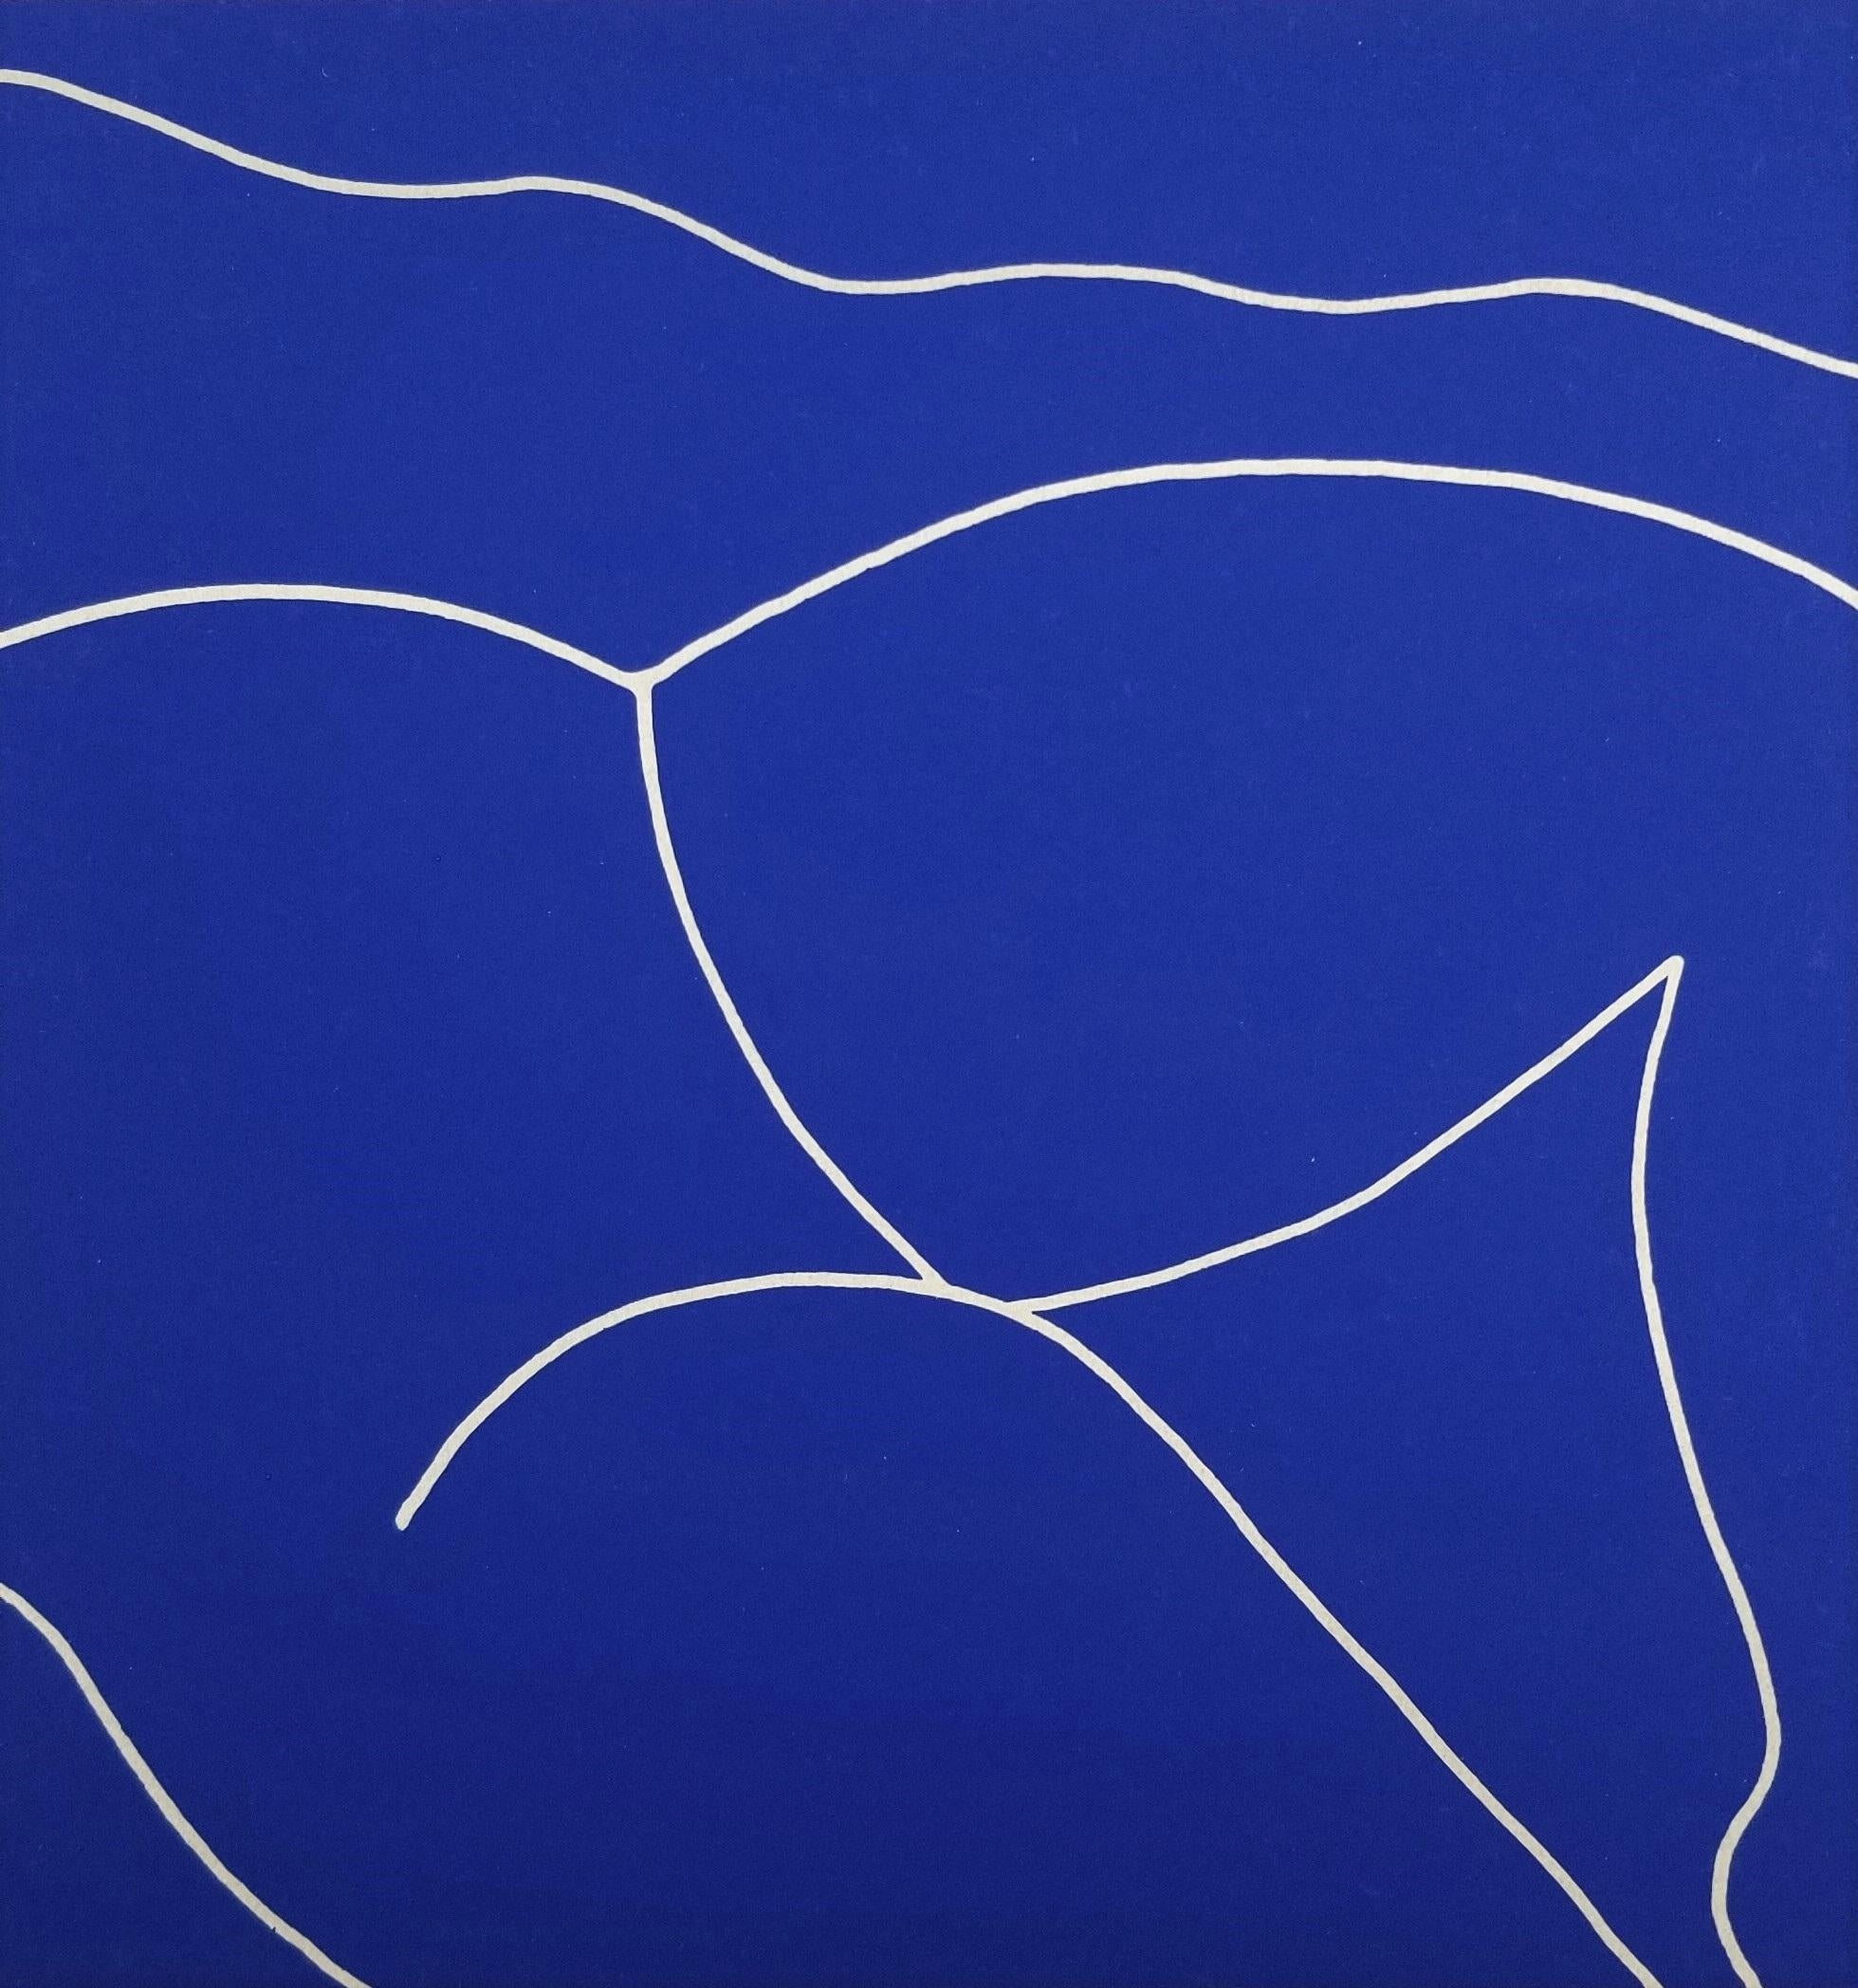 Dan May Nude Print - Reclining Nude (Blue) /// Contemporary Pop Street Art Figurative Screenprint 